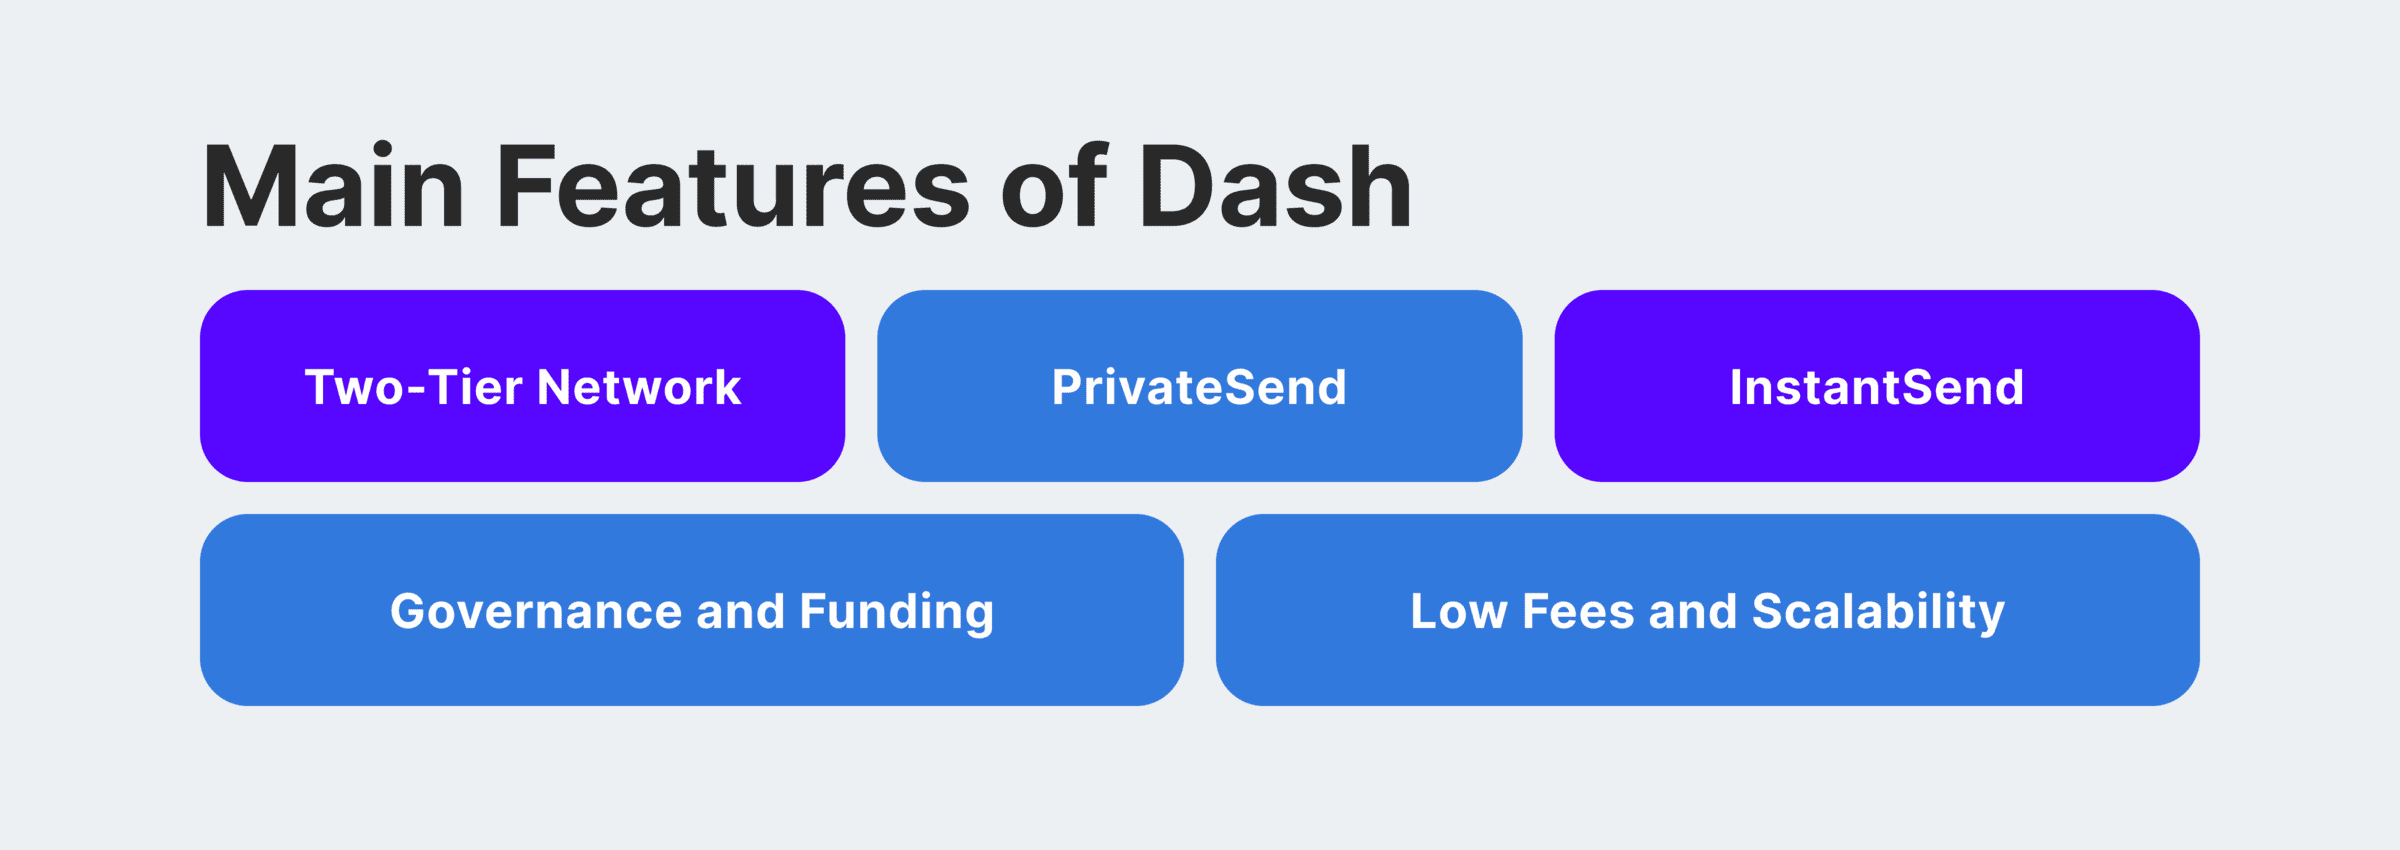 Как найти платежный шлюз Dash, чтобы начать принимать Dash